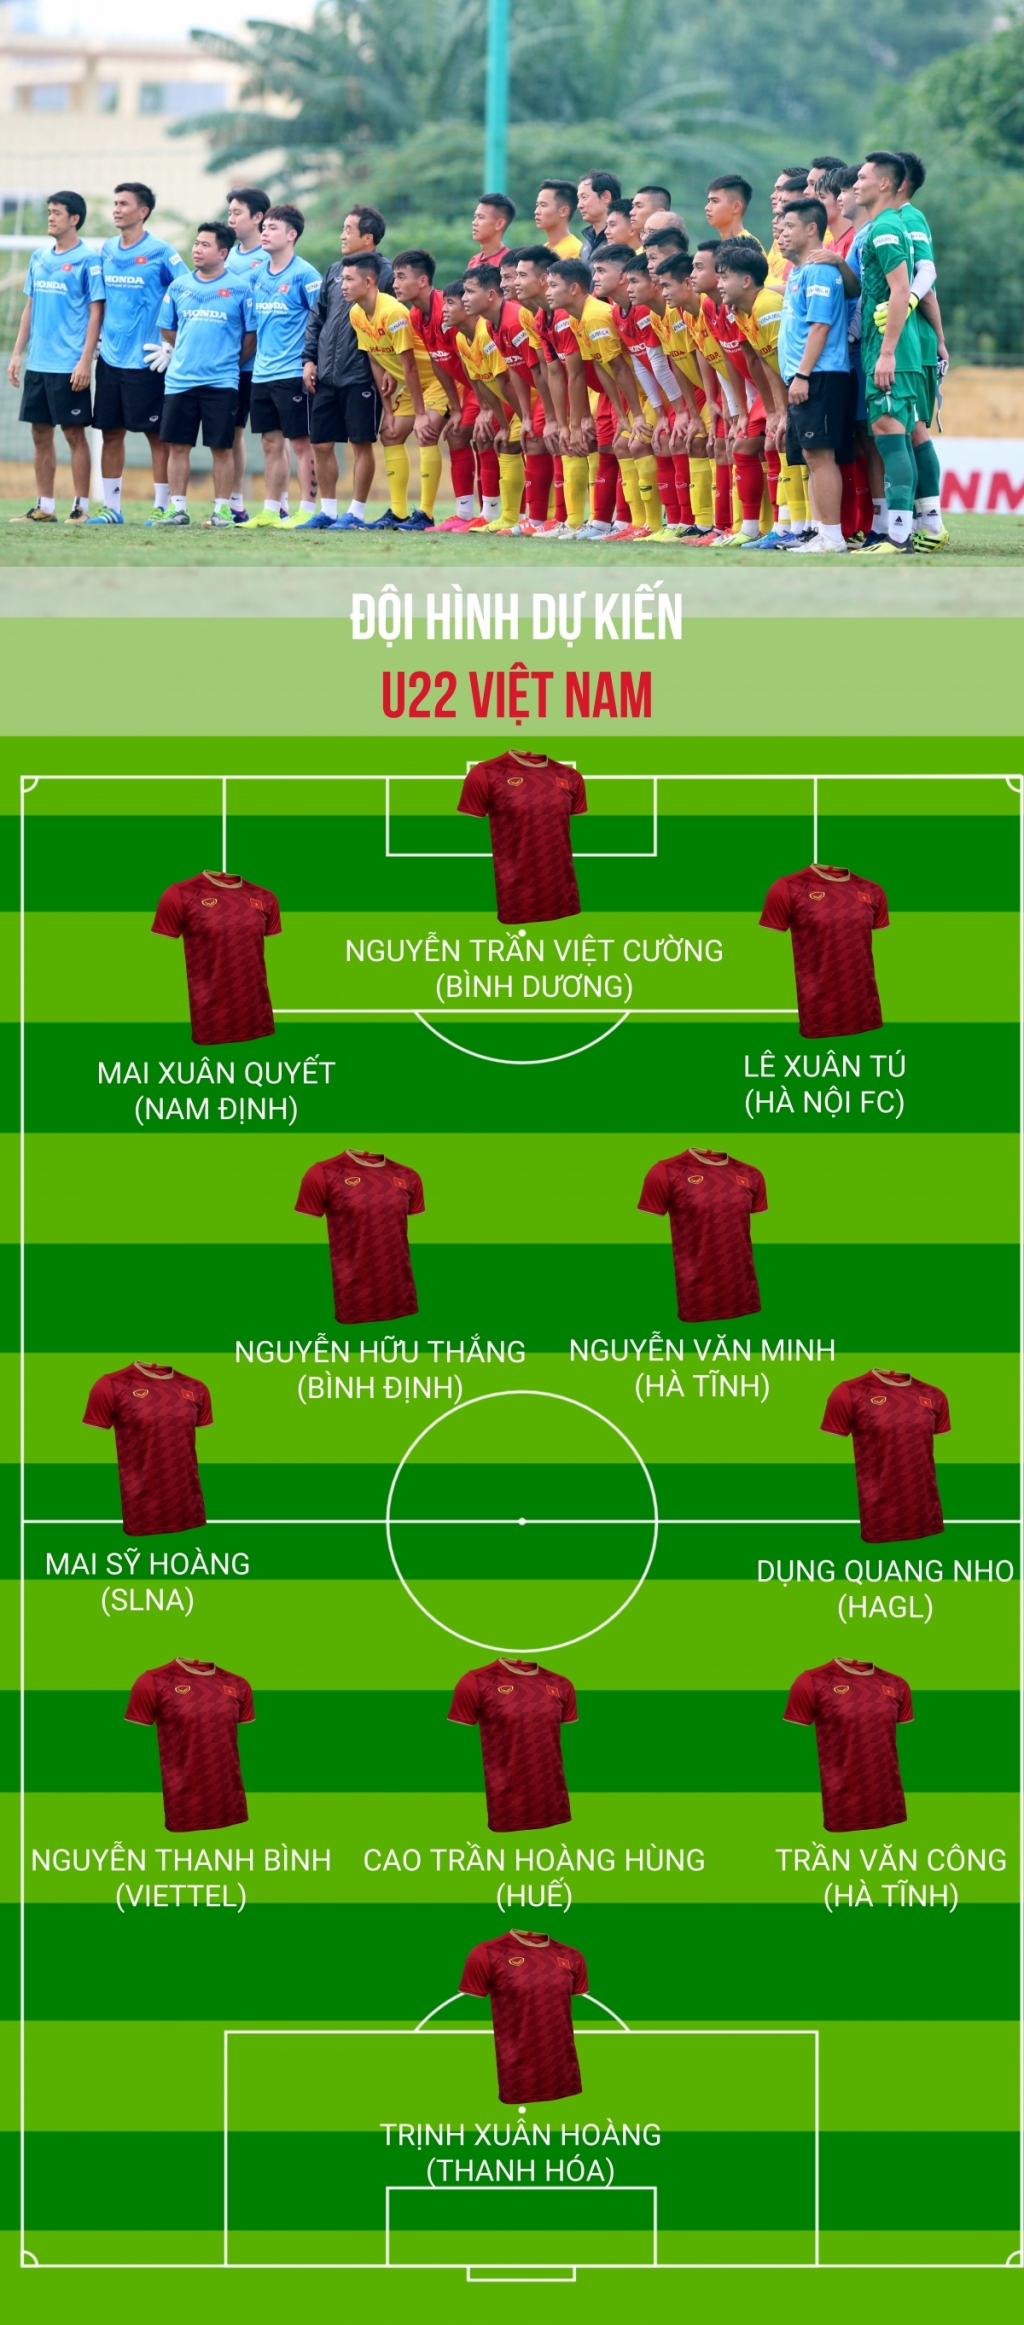 Đội hình dự kiến U22 Việt Nam đấu giao hữu với ĐT Việt Nam